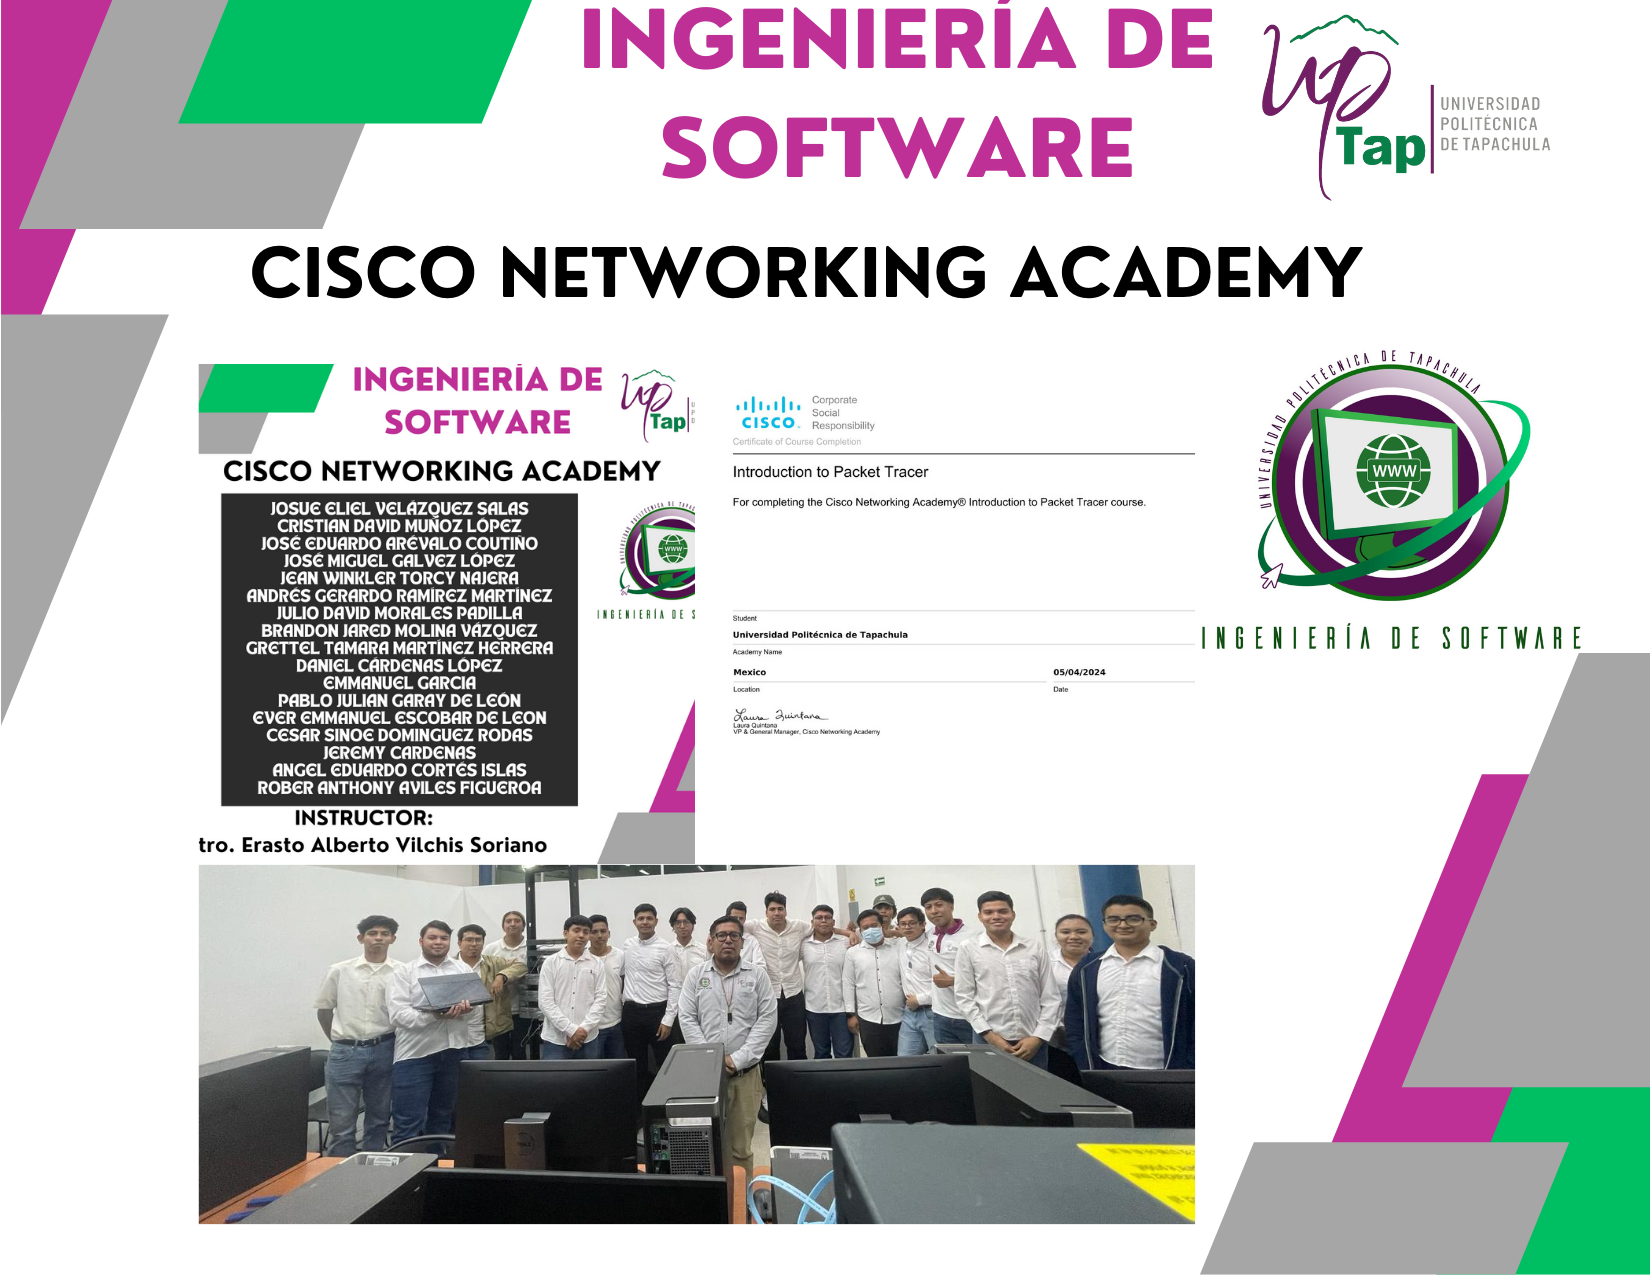 Estudiantes de 5º cuatrimestre de la Ingeniería de Software obtienen certificado de la Academia CISCO Networking